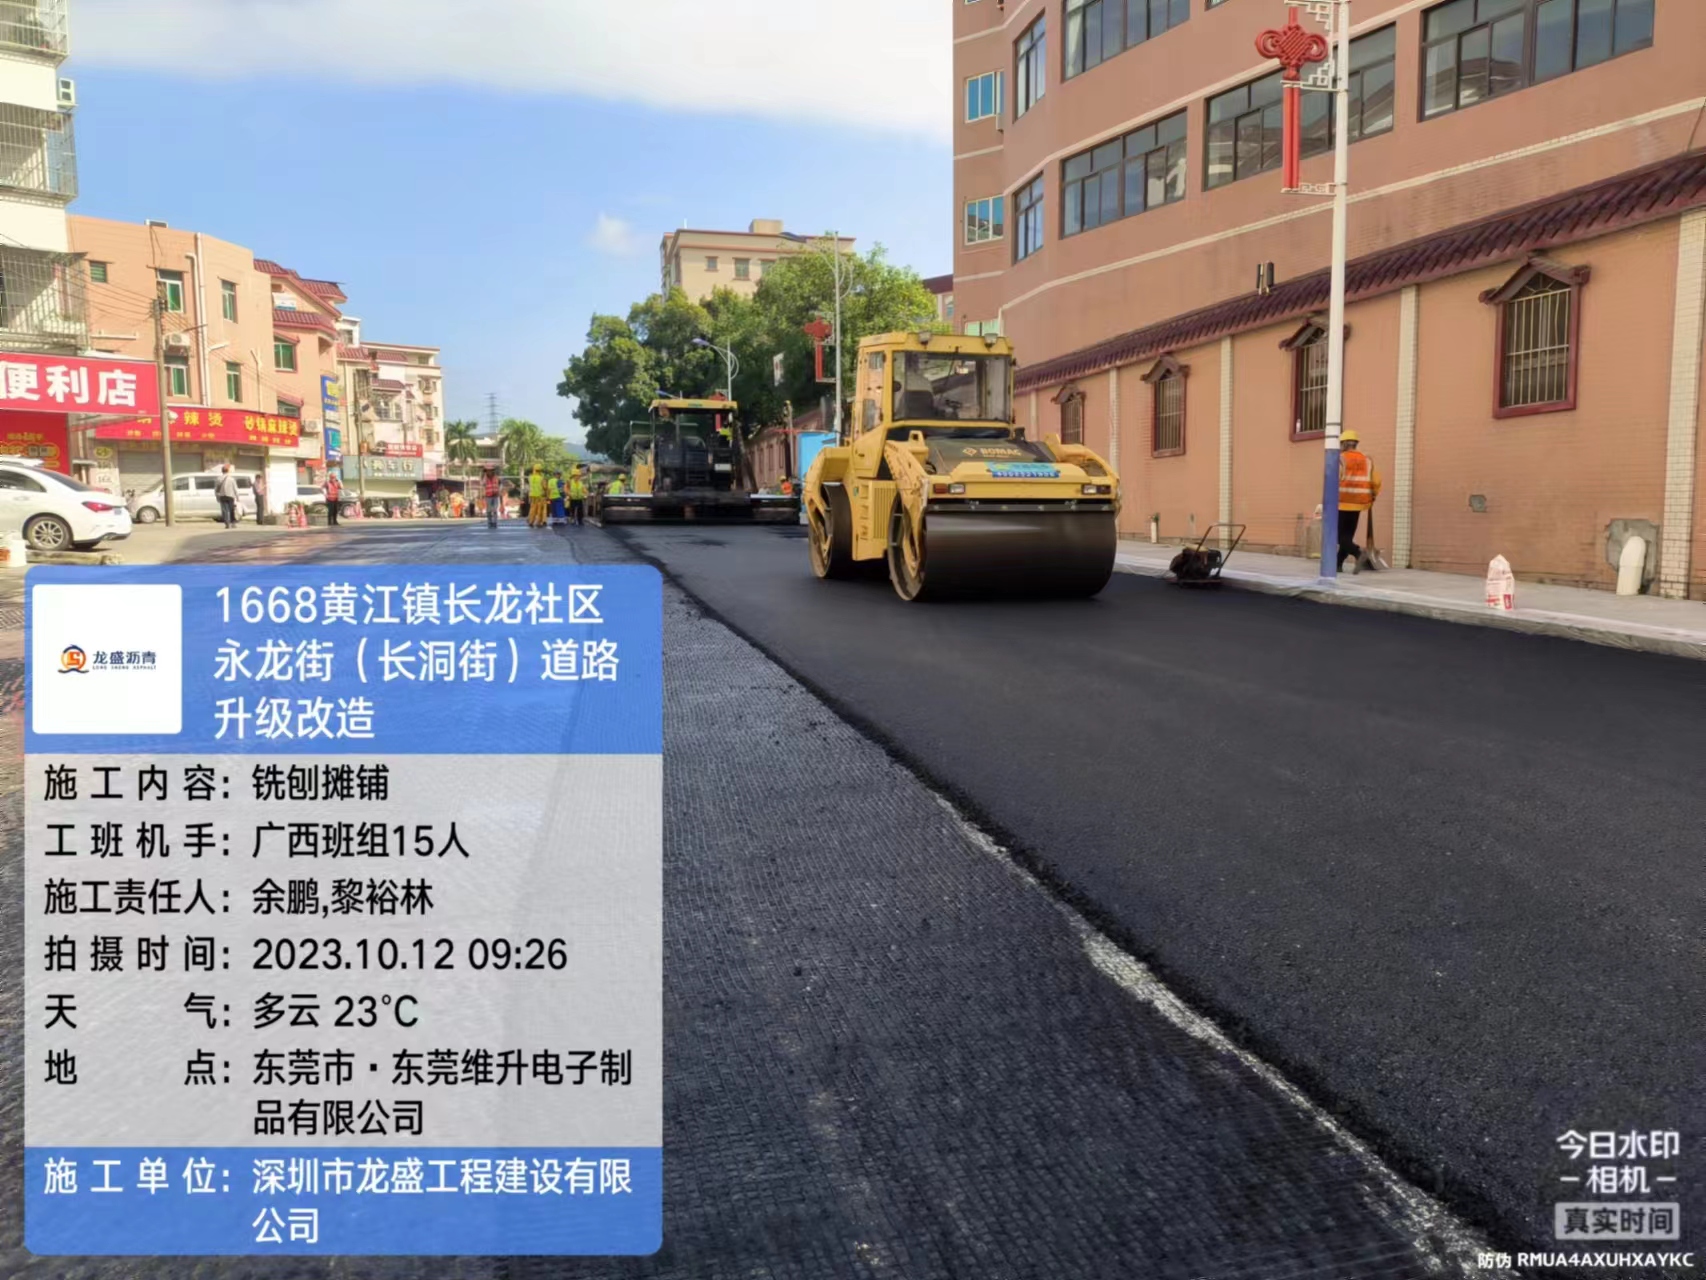 东莞黄江镇长龙社区永龙街(长洞街)道路升级改造